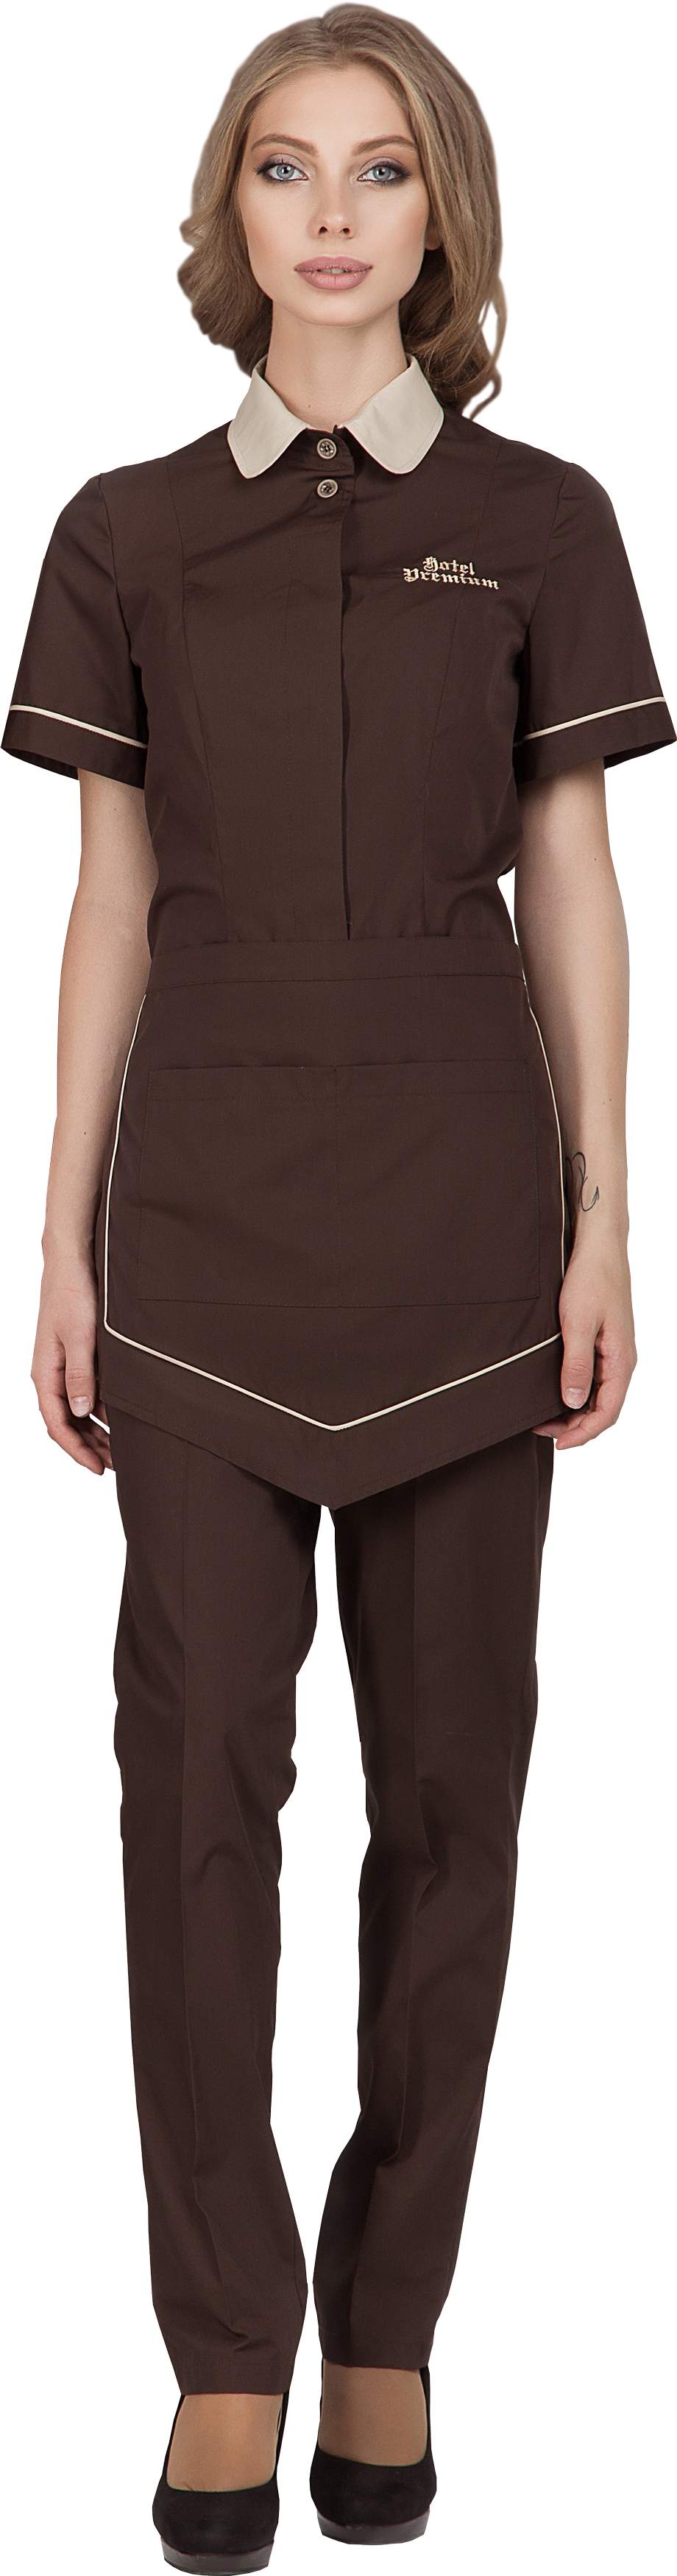 Комплект для горничной LIMA - блузка / фартук / брюки